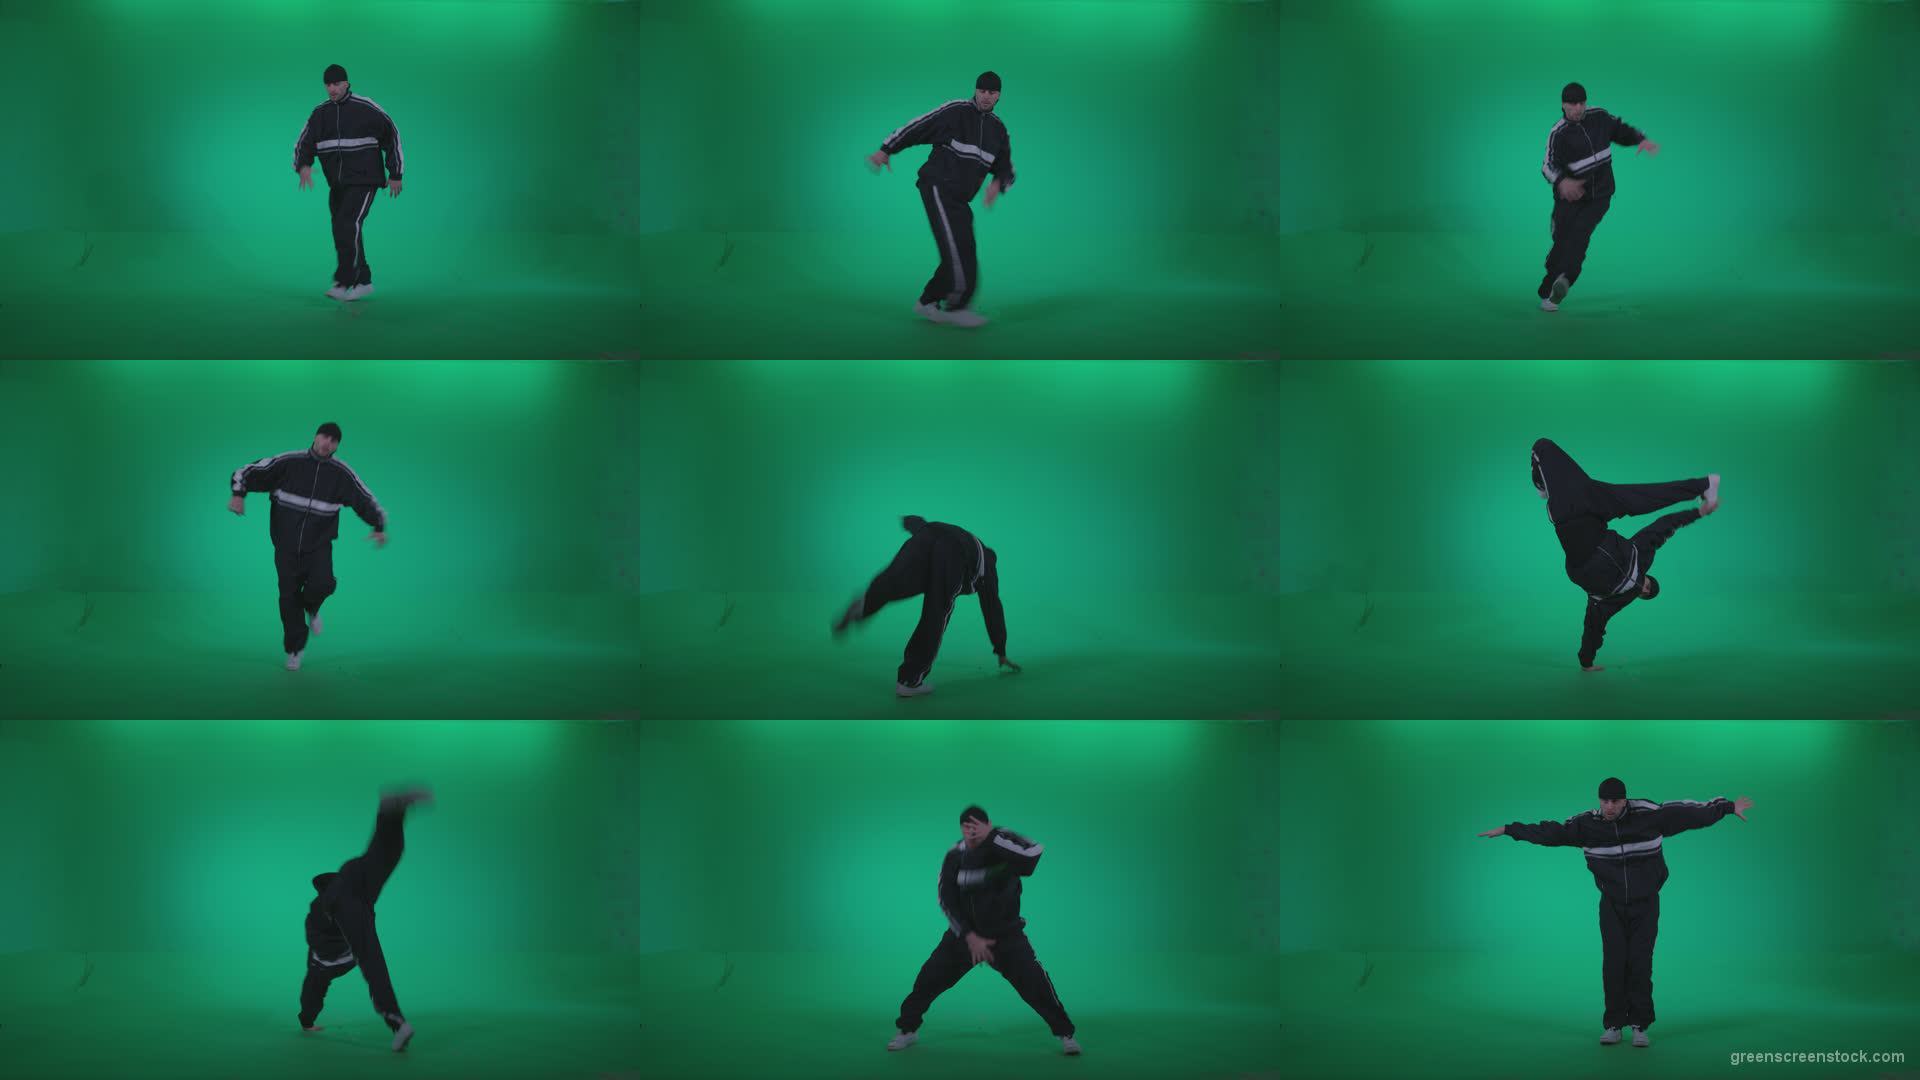 B-Boy-Break-Dance-b16 Green Screen Stock